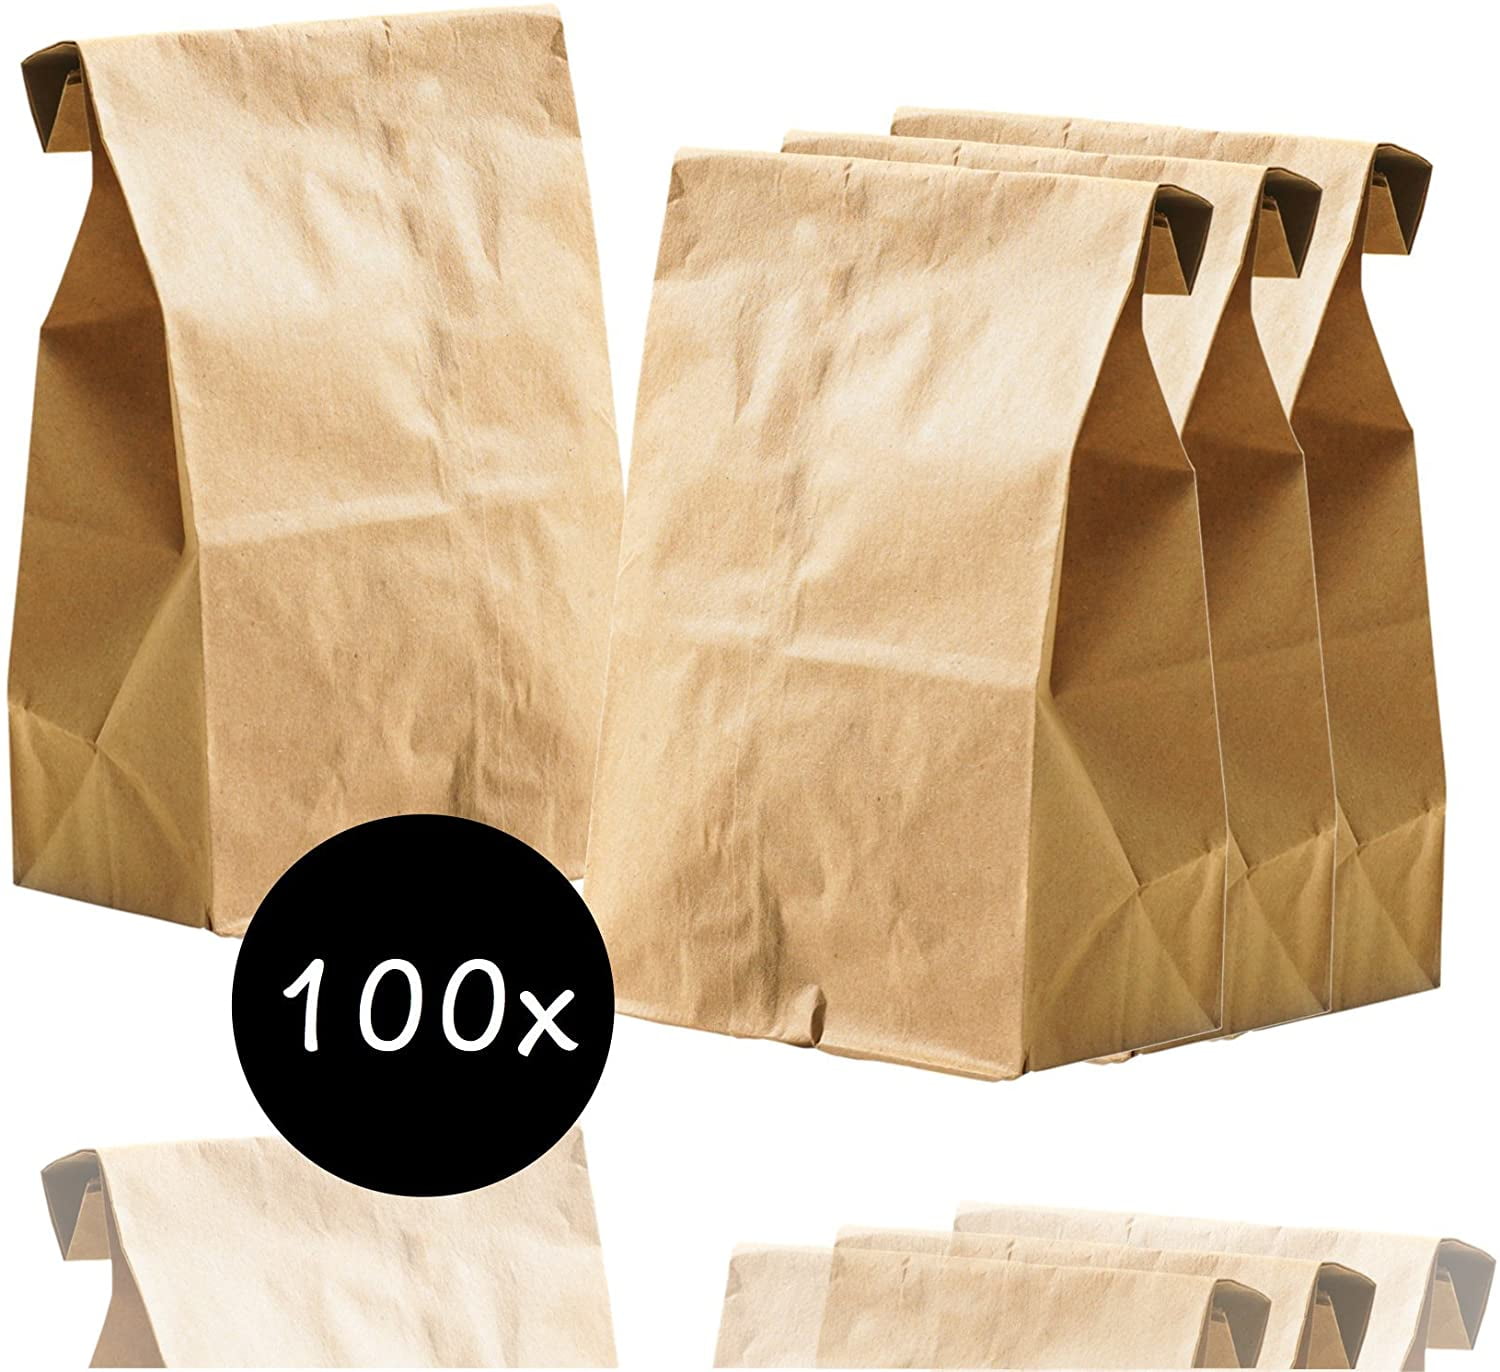 12" x 12" 100x Brown Kraft Flat Paper Bags Brown Food Grocery Sandwich Bags 